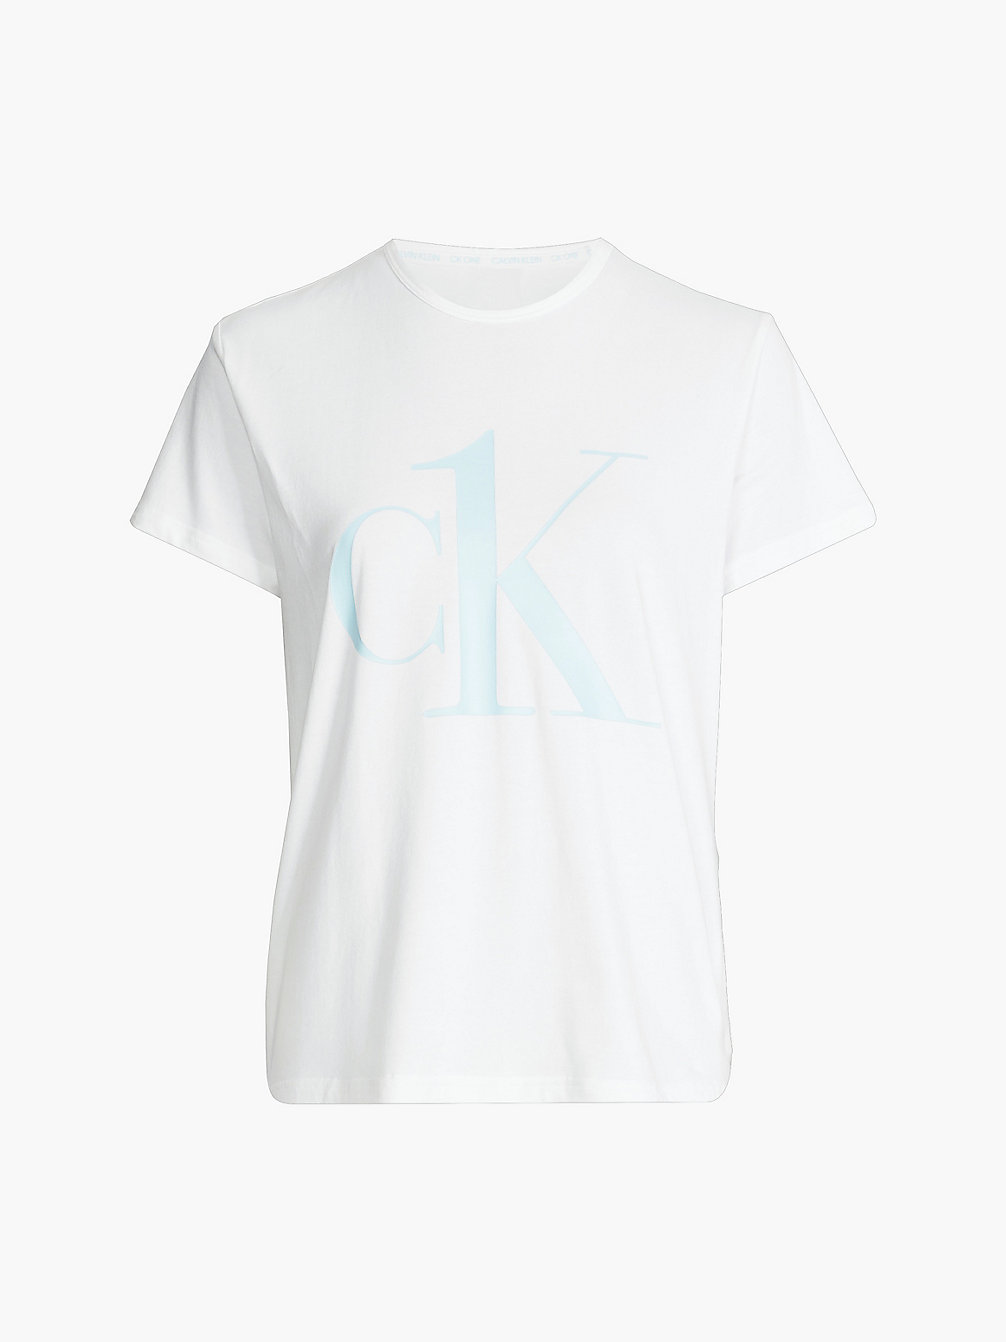 WHITE W/ PALEST BLUE LOGO Pyjama-Top – CK One undefined Damen Calvin Klein